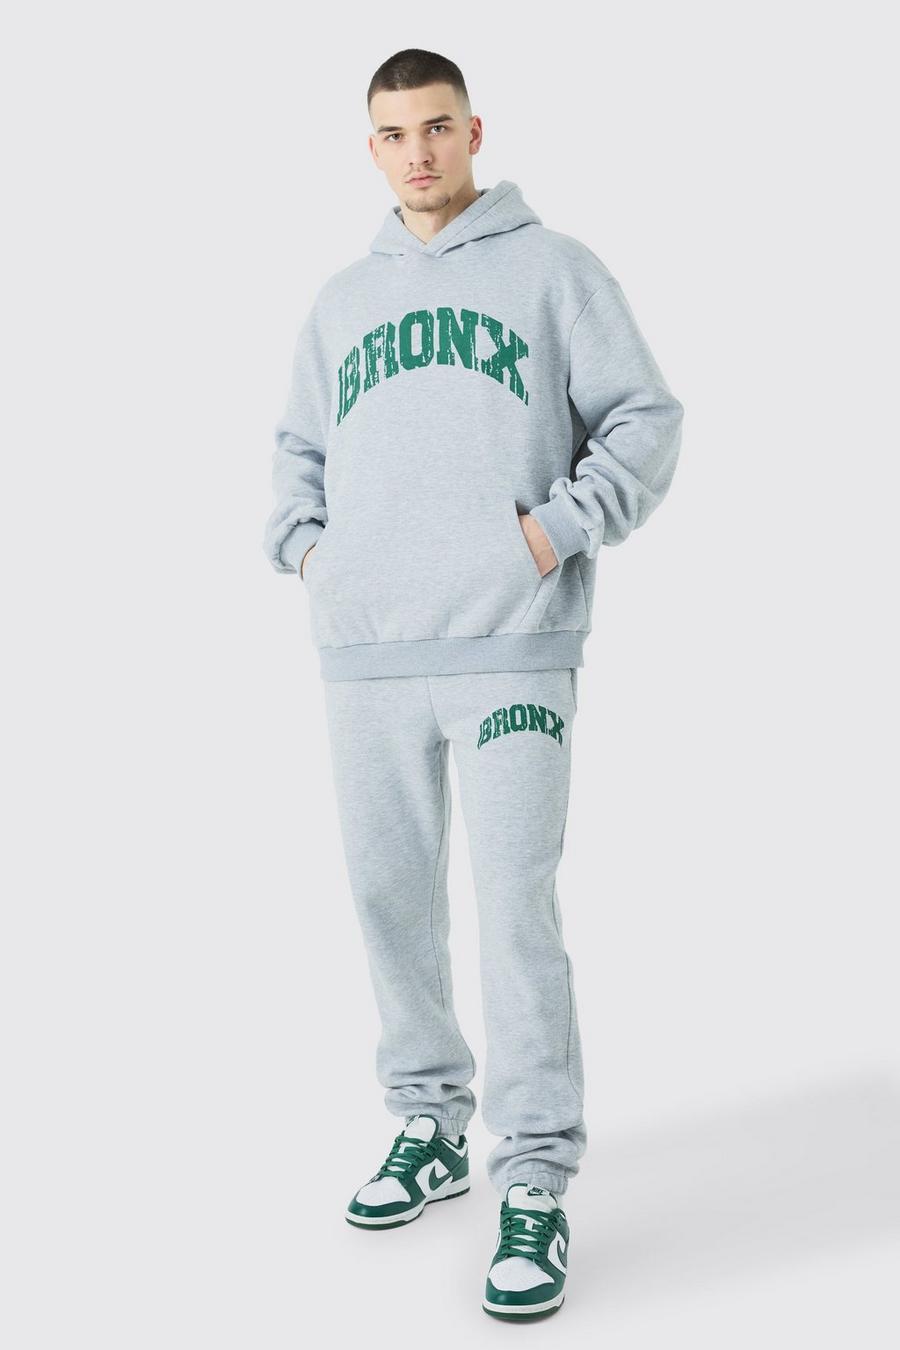 Grey marl Tall Bronx Oversize träningsoverall med sweatshirt i varsitystil